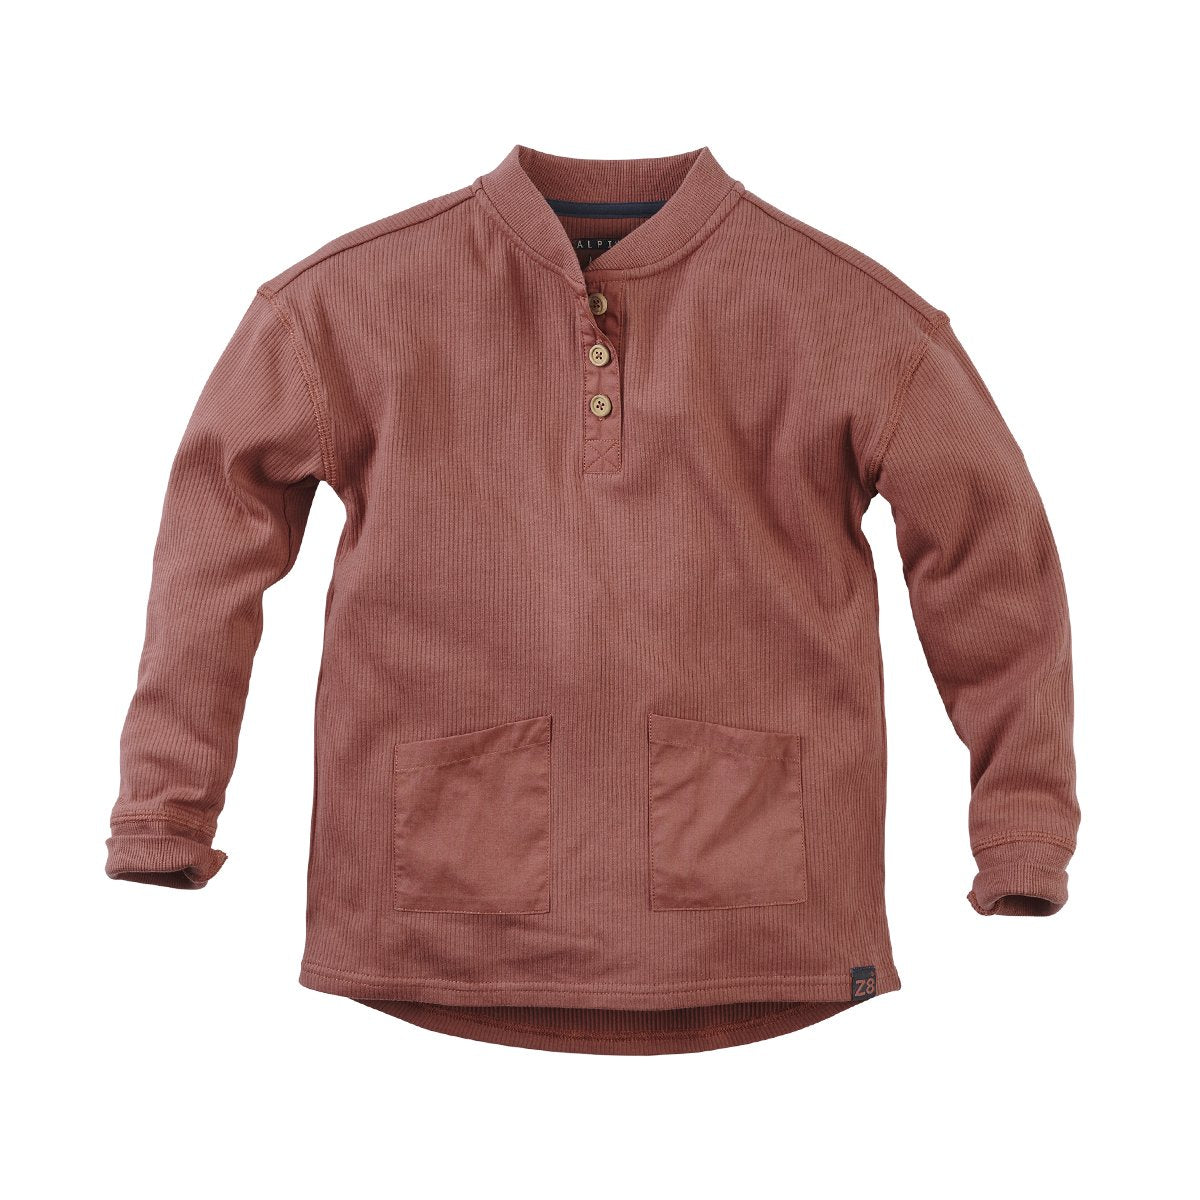 Jongens Sweater Mitch van Z8 in de kleur Red rust in maat 140/146.